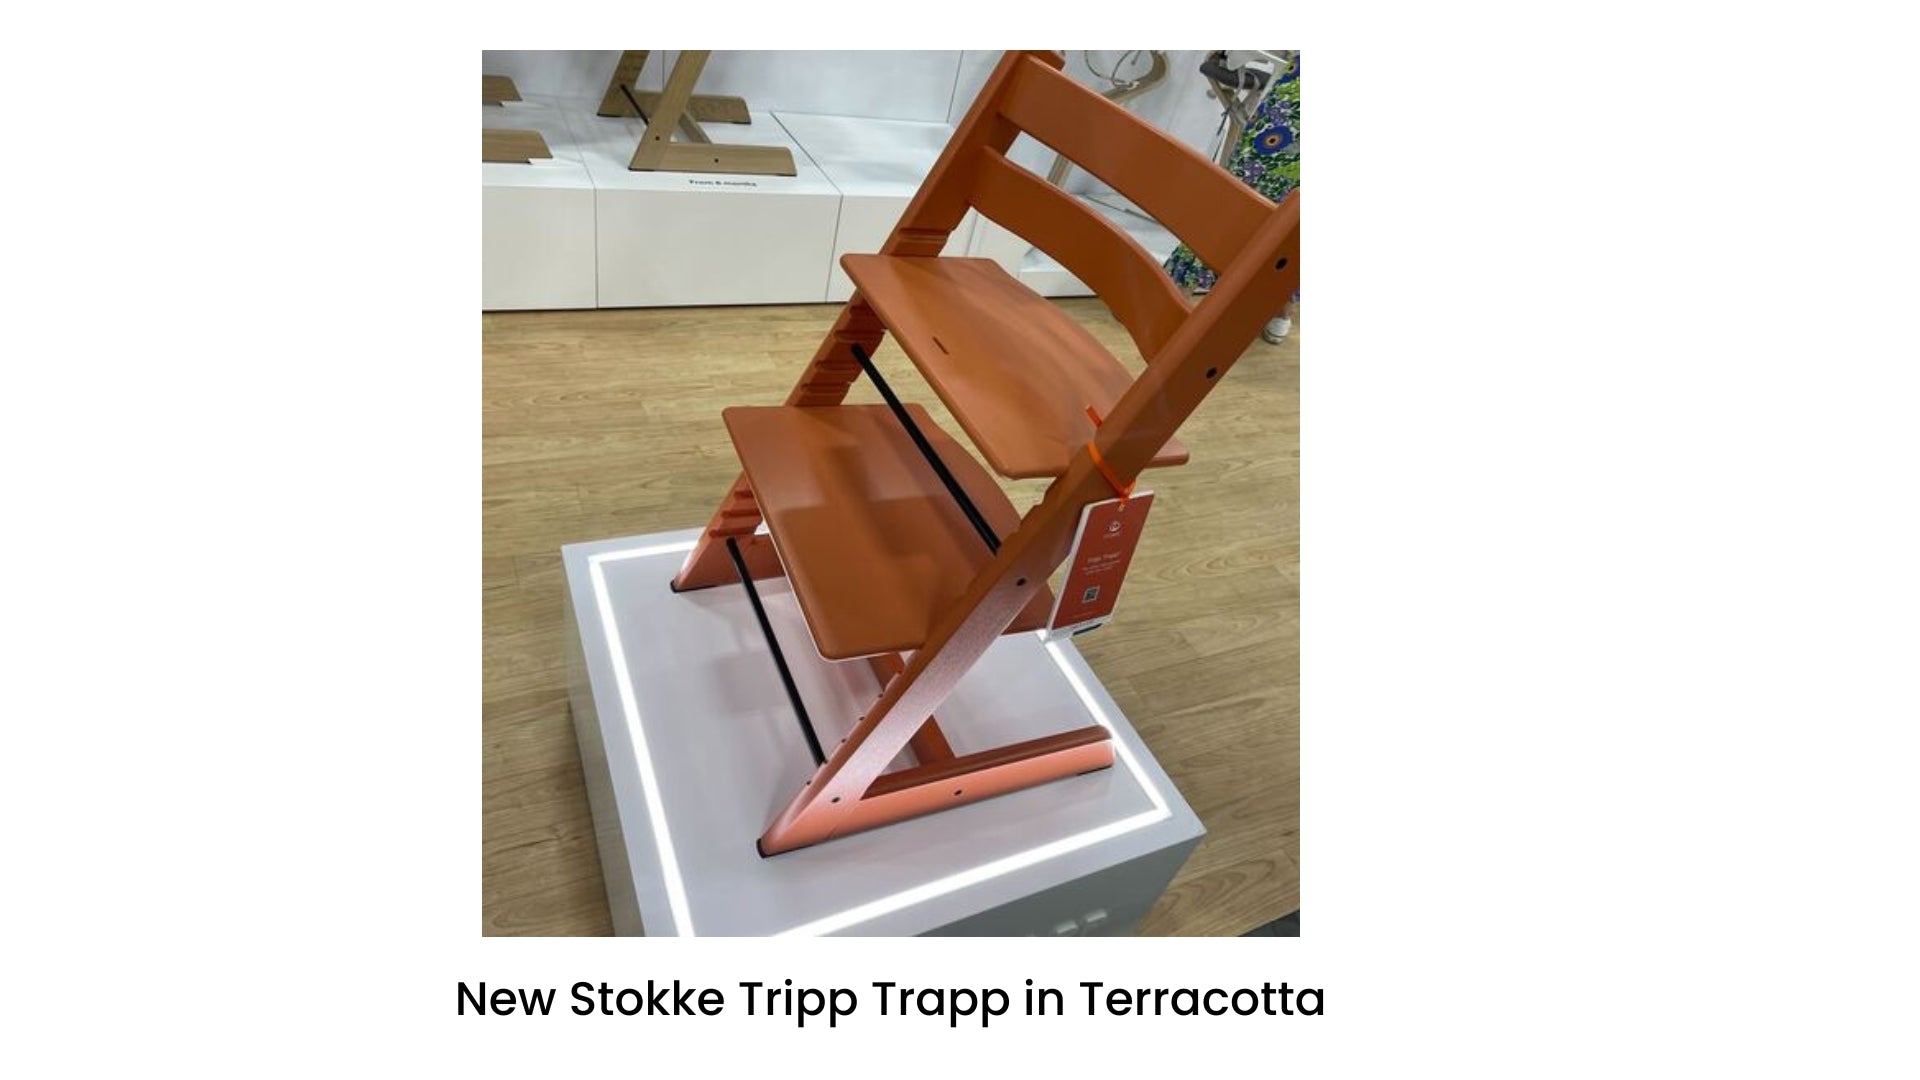 Stokke Tripp Trapp in Terracotta